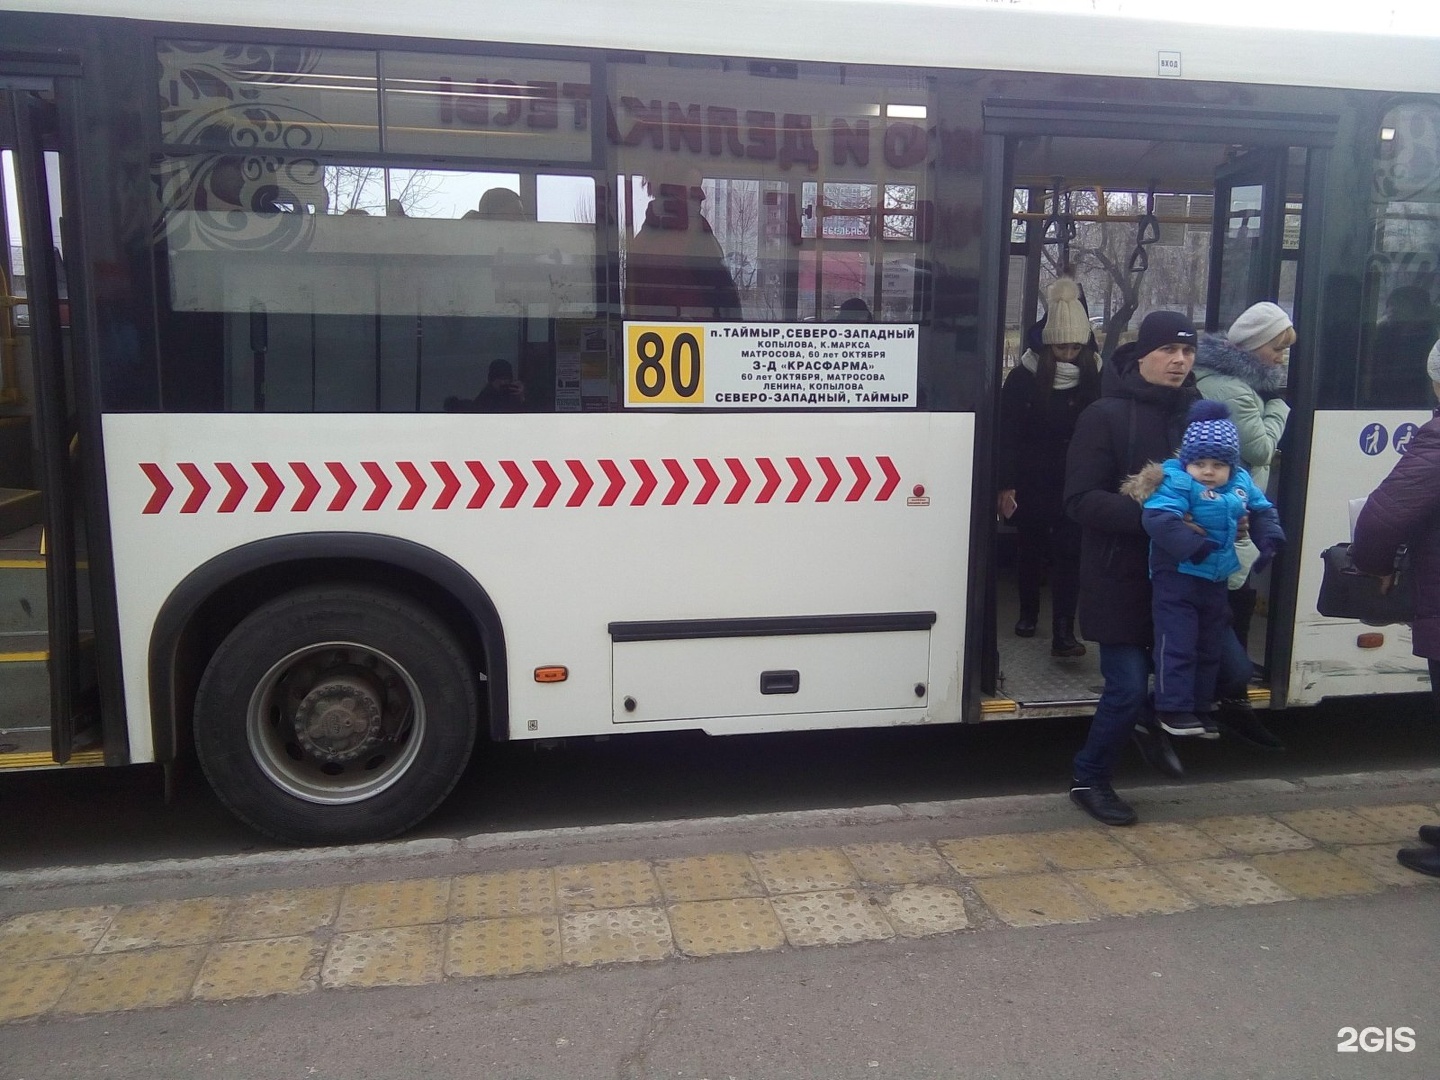 Время автобус красноярского